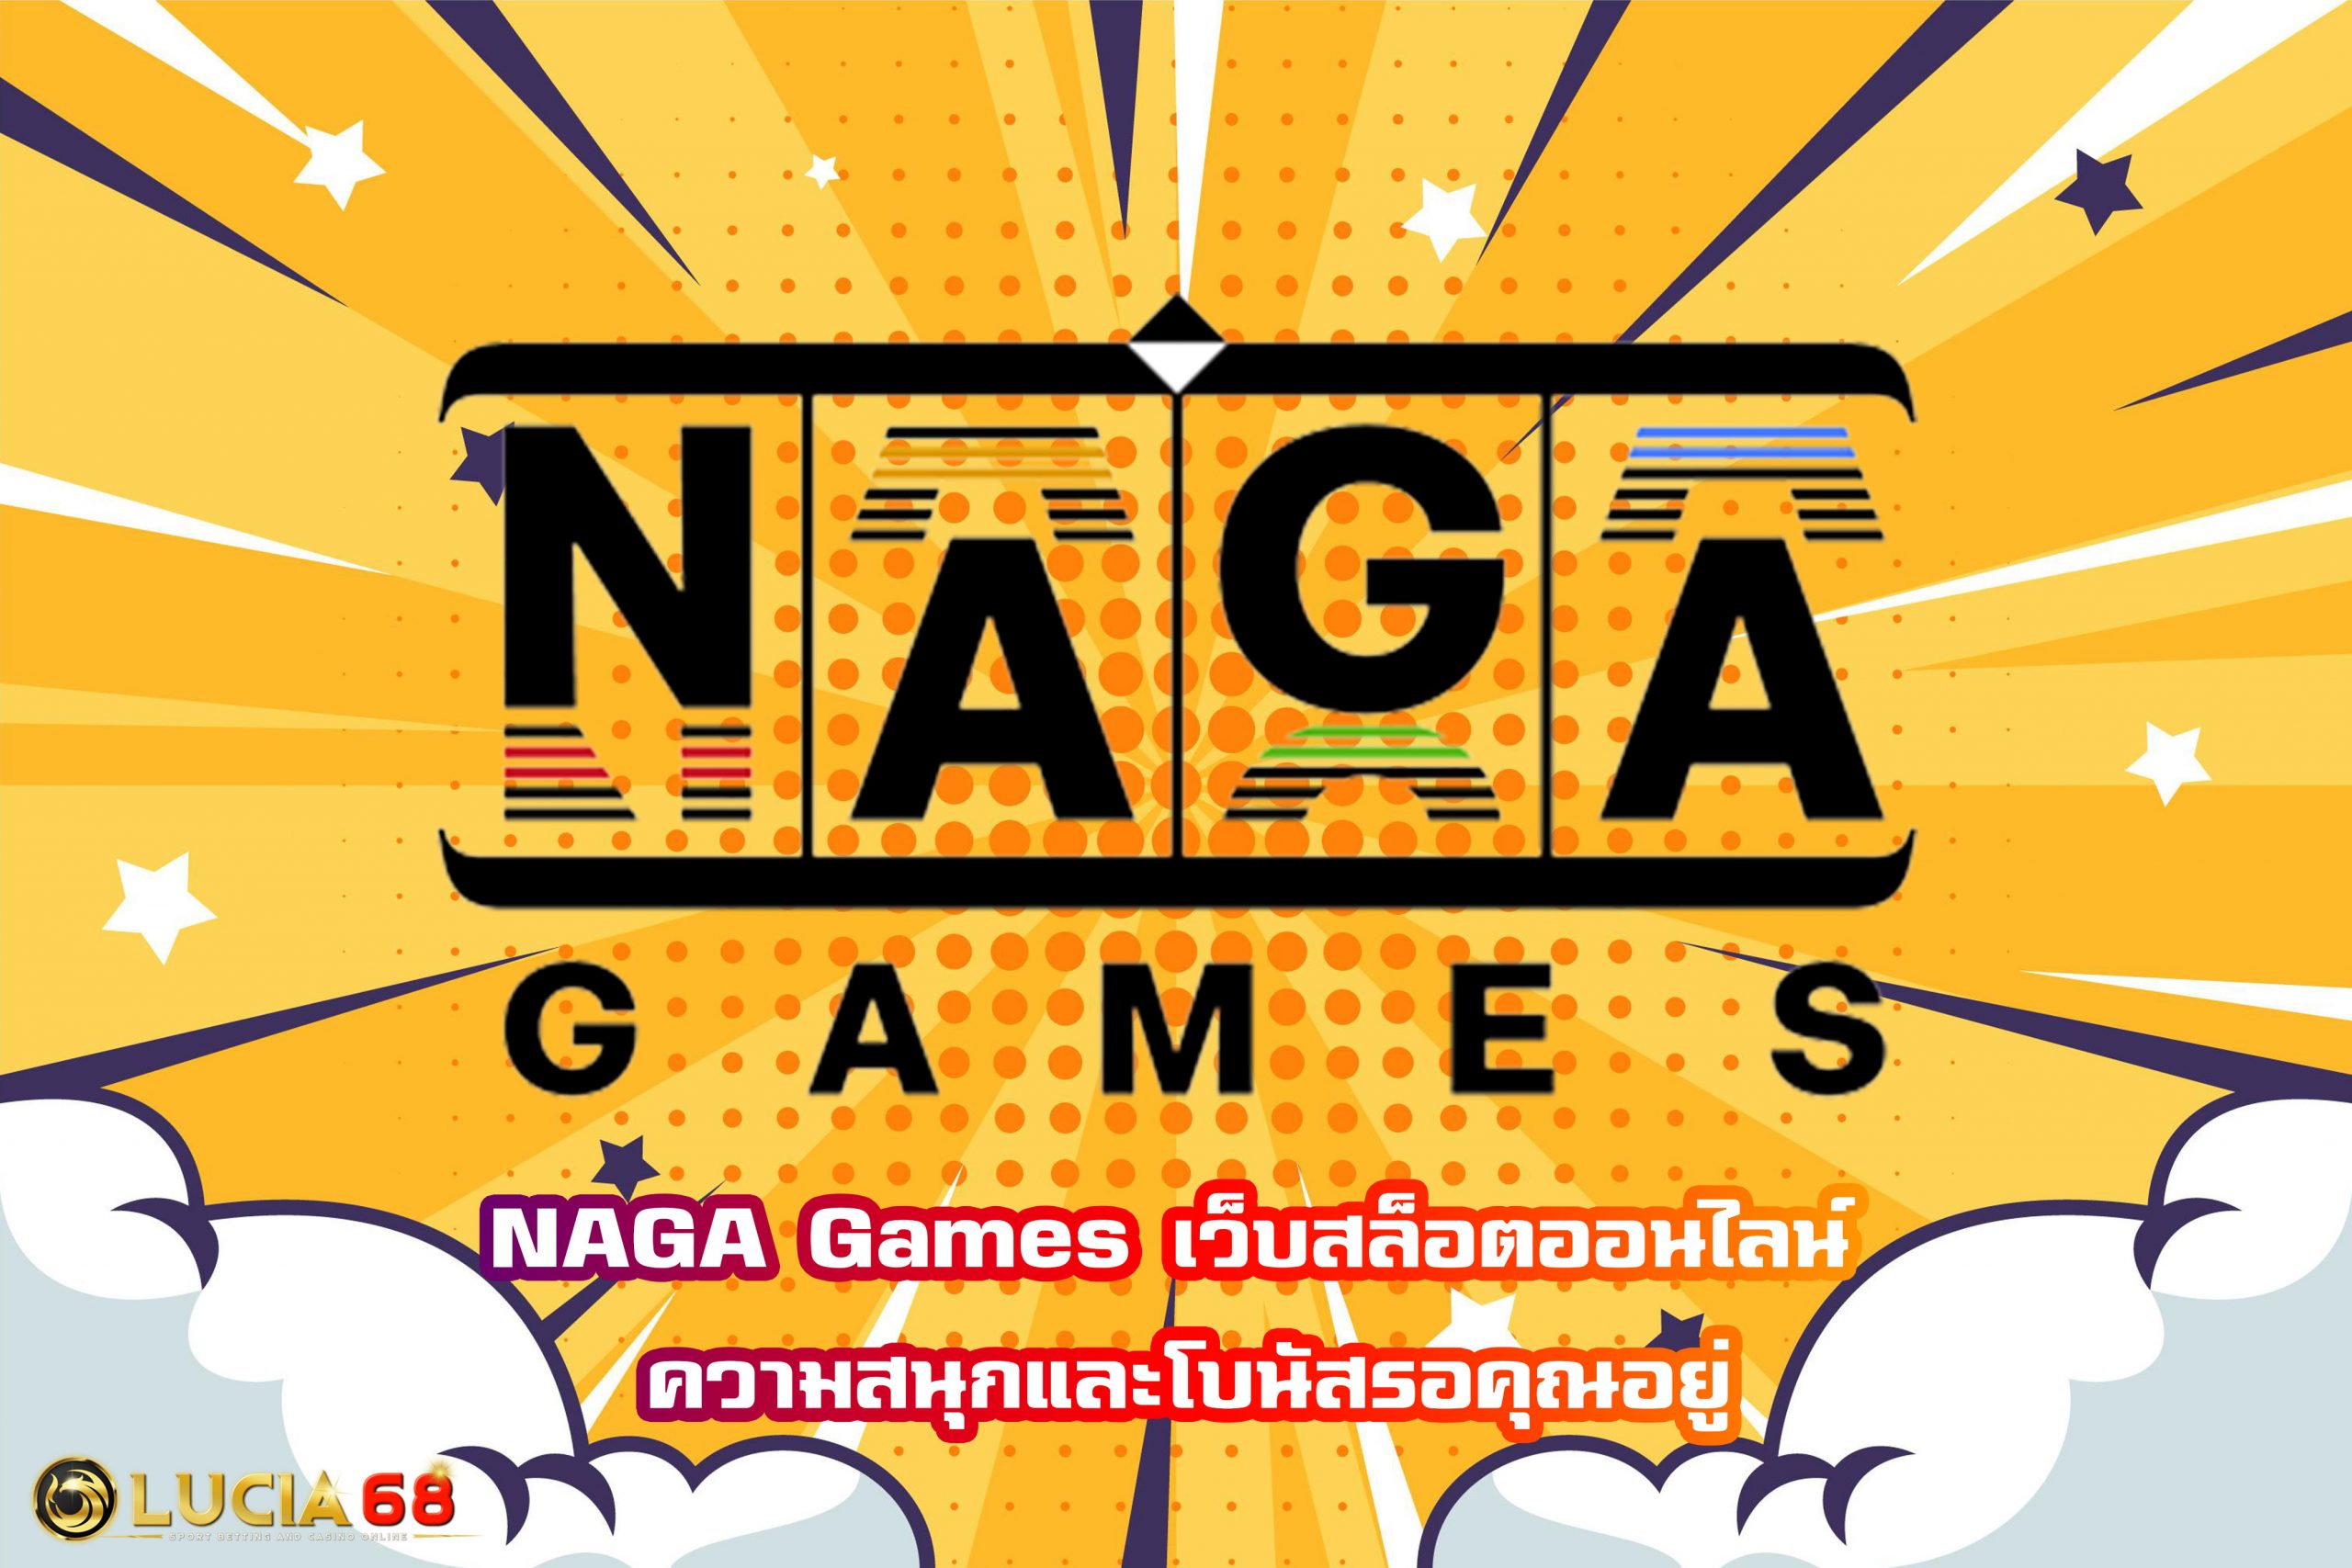 NAGA Games เว็บสล็อตออนไลน์ ความสนุกและโบนัสรอคุณอยู่